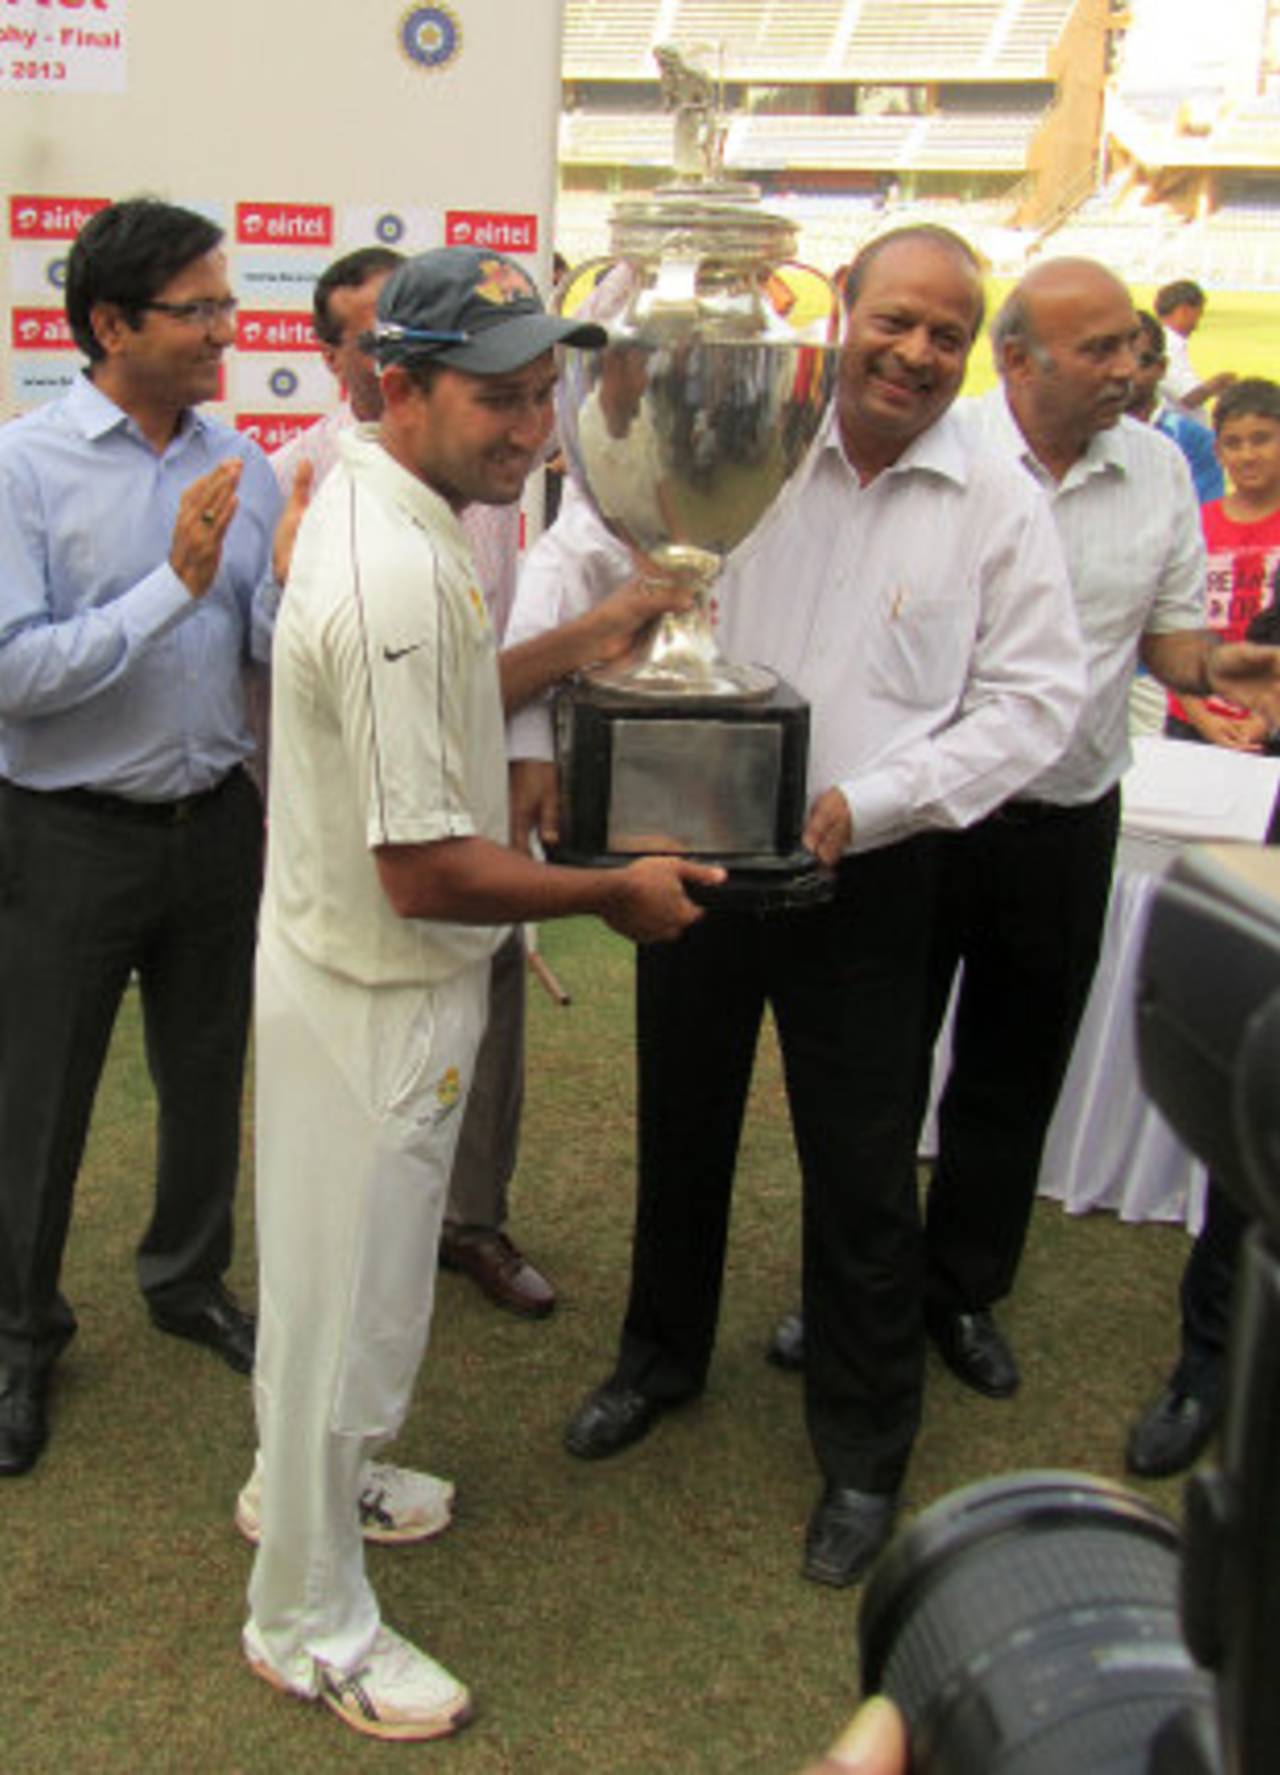 Ajit Agarkar receives Mumbai's 40th Ranji Trophy title&nbsp;&nbsp;&bull;&nbsp;&nbsp;ESPNcricinfo Ltd